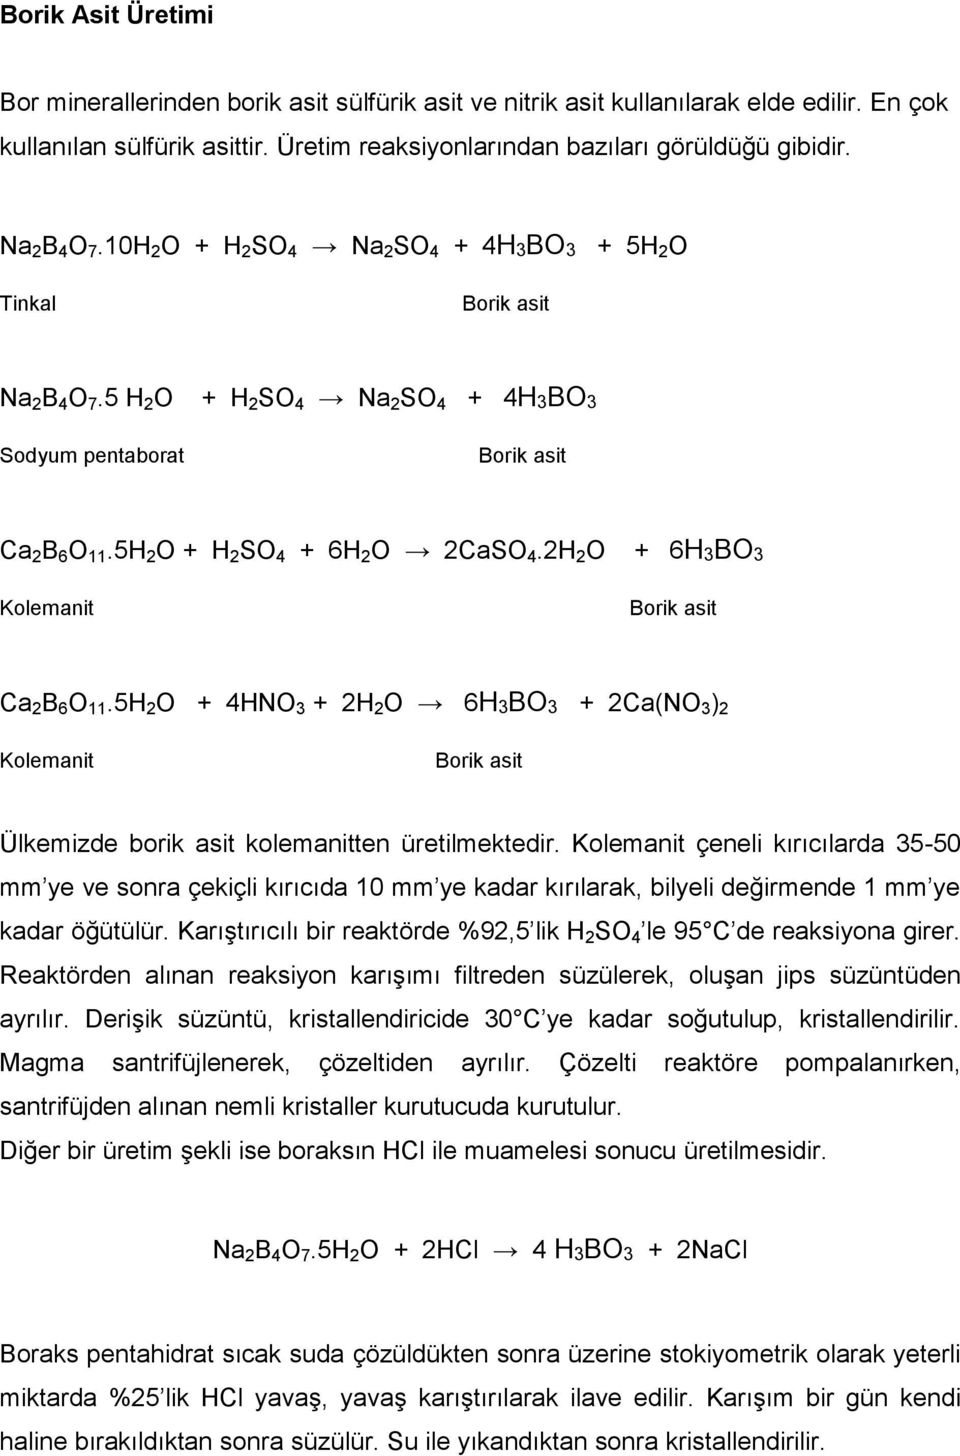 2H 2 O Kolemanit + 6H3BO3 Ca 2 B 6 O 11.5H 2 O + 4HNO 3 + 2H 2 O 6H3BO3 + 2Ca(NO 3 ) 2 Kolemanit Ülkemizde borik asit kolemanitten üretilmektedir.